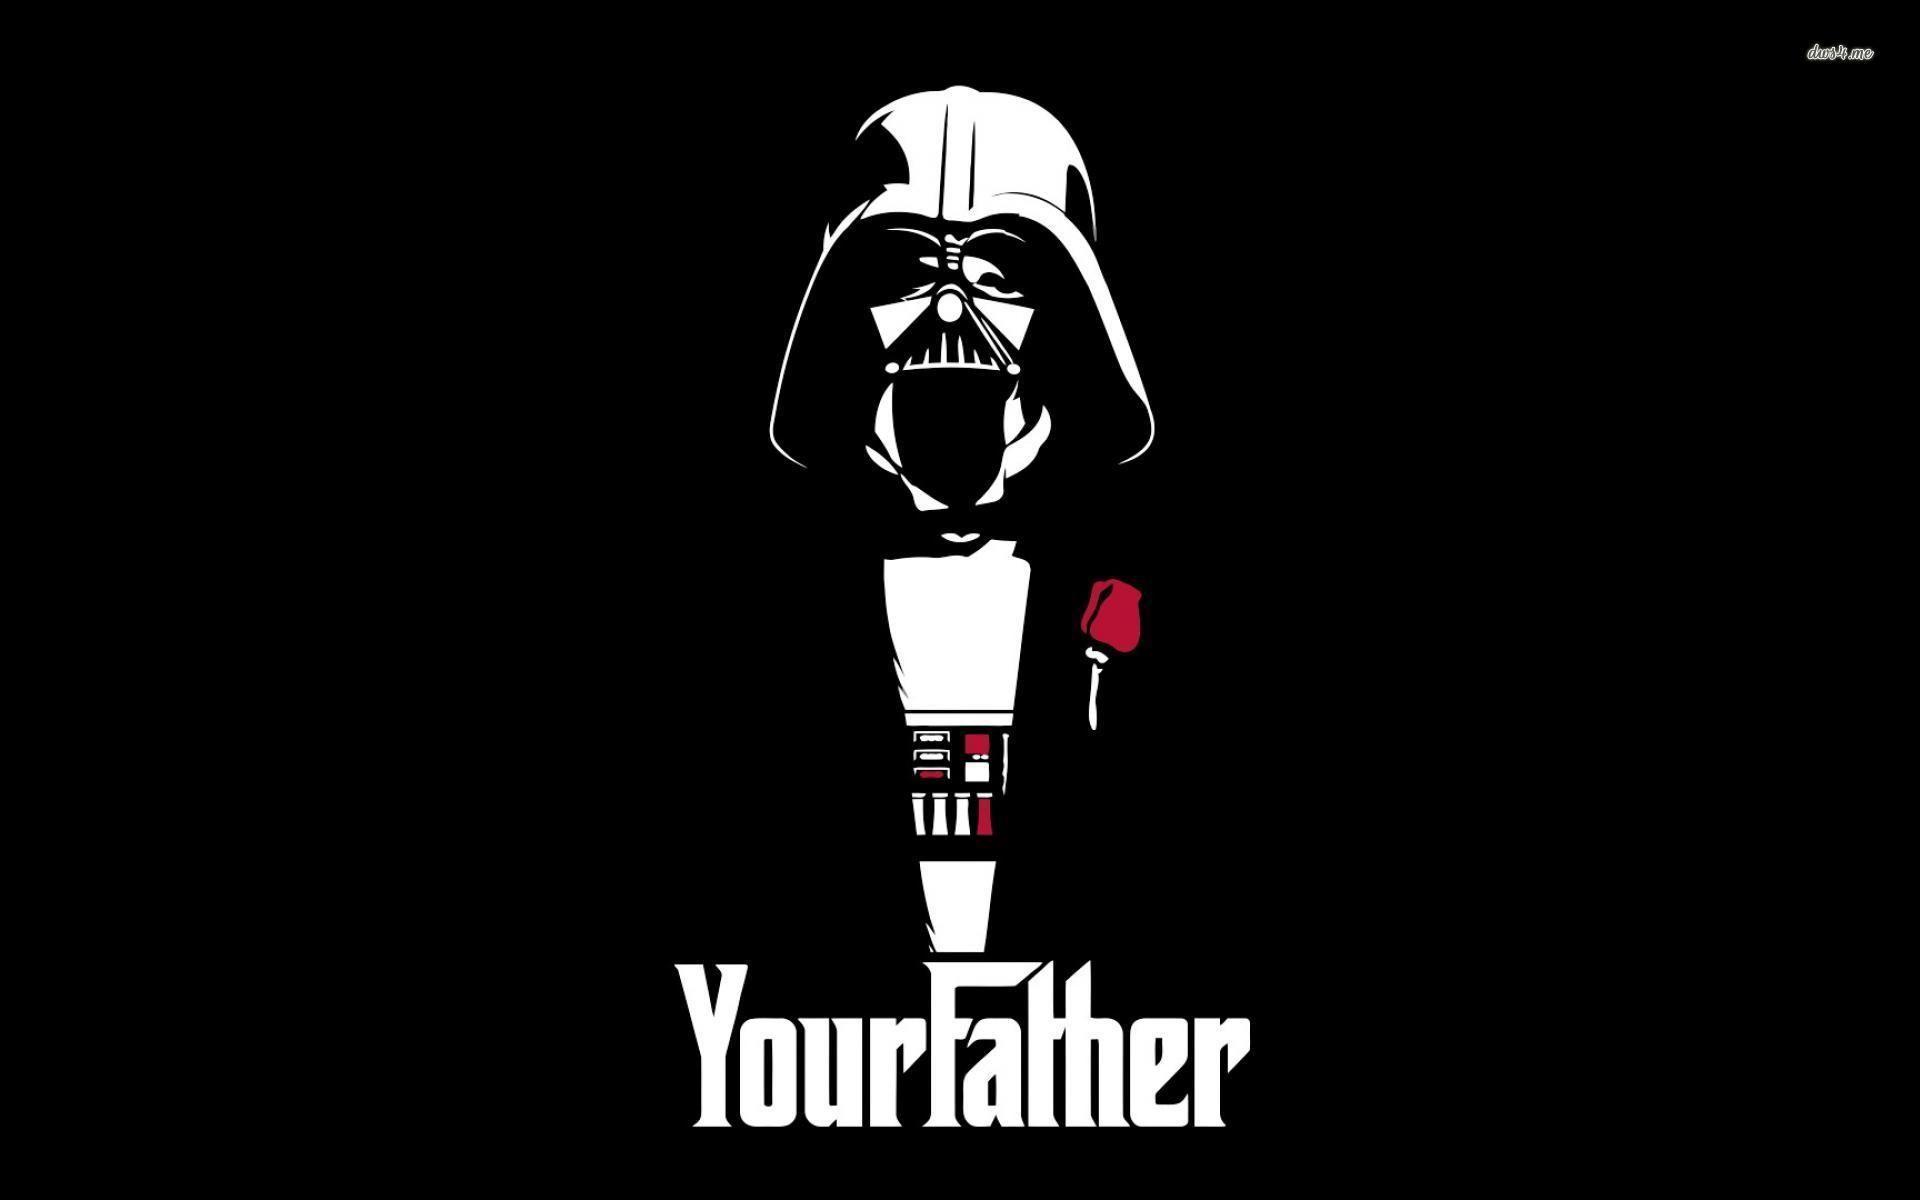 Darth Vader Godfather crossover .com